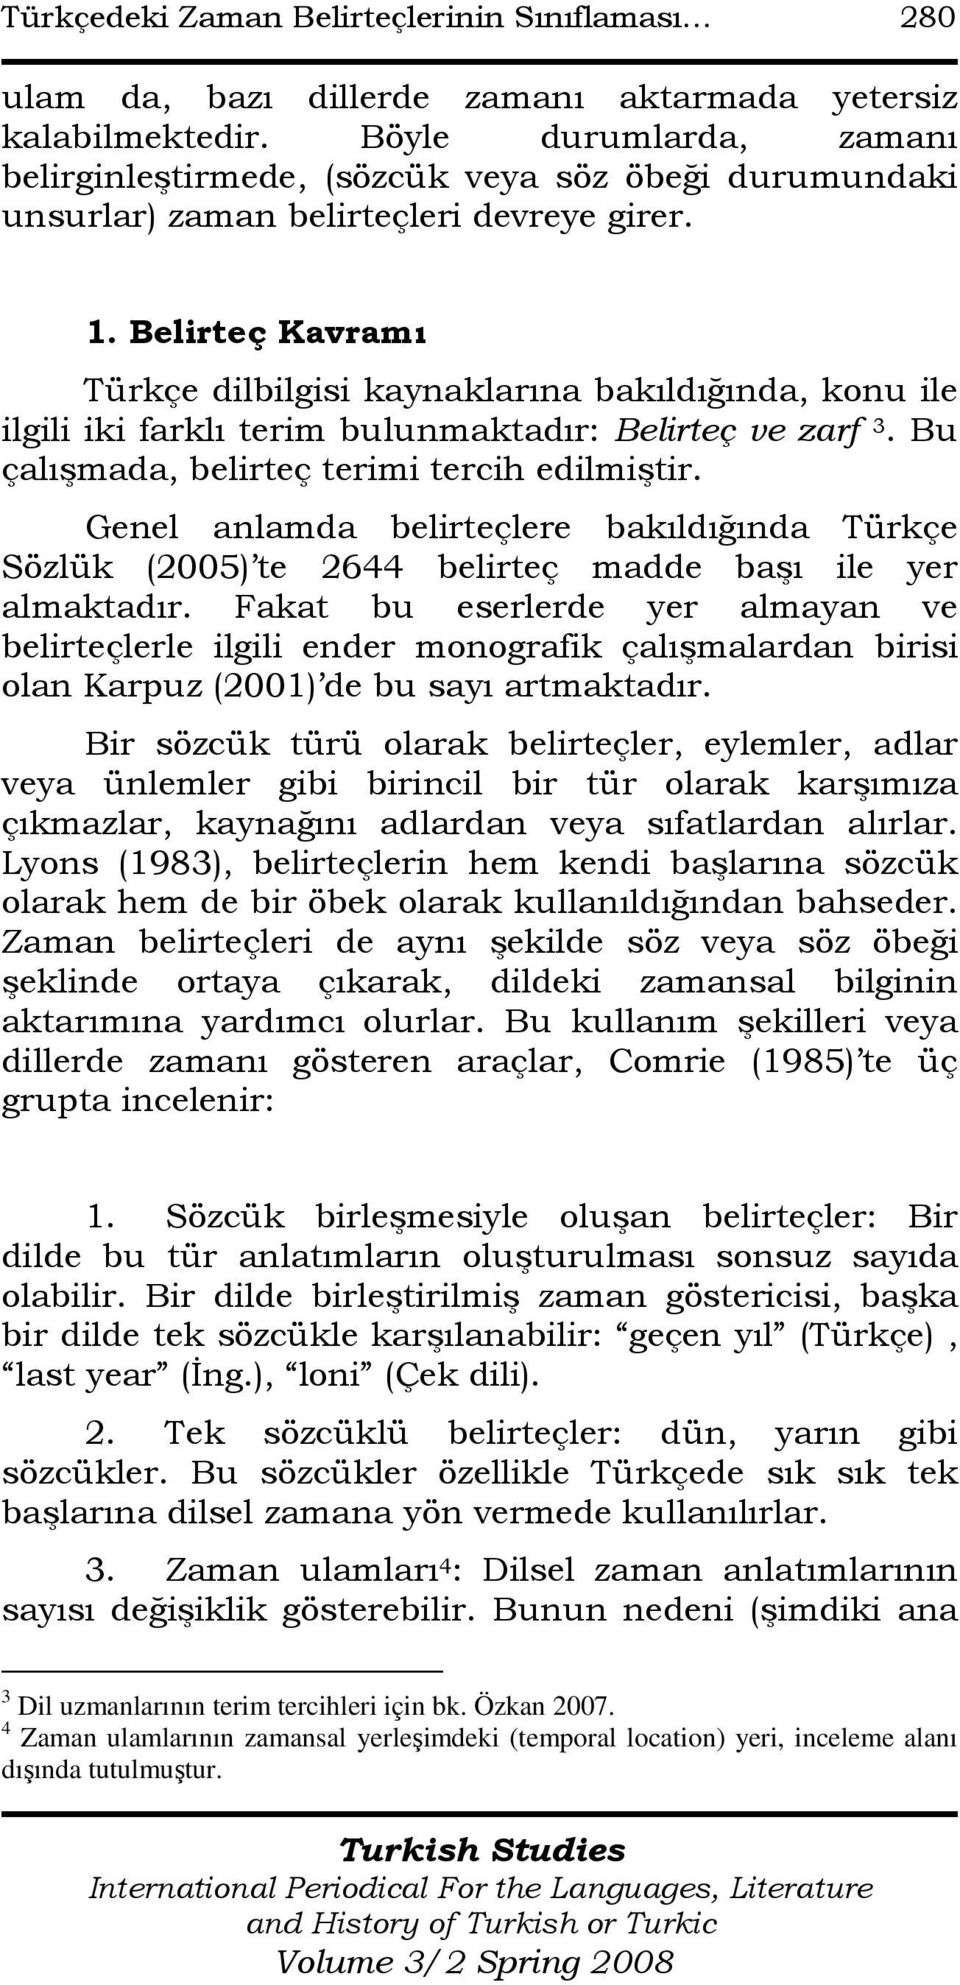 Belirteç Kavramı Türkçe dilbilgisi kaynaklarına bakıldığında, konu ile ilgili iki farklı terim bulunmaktadır: Belirteç ve zarf 3. Bu çalışmada, belirteç terimi tercih edilmiştir.